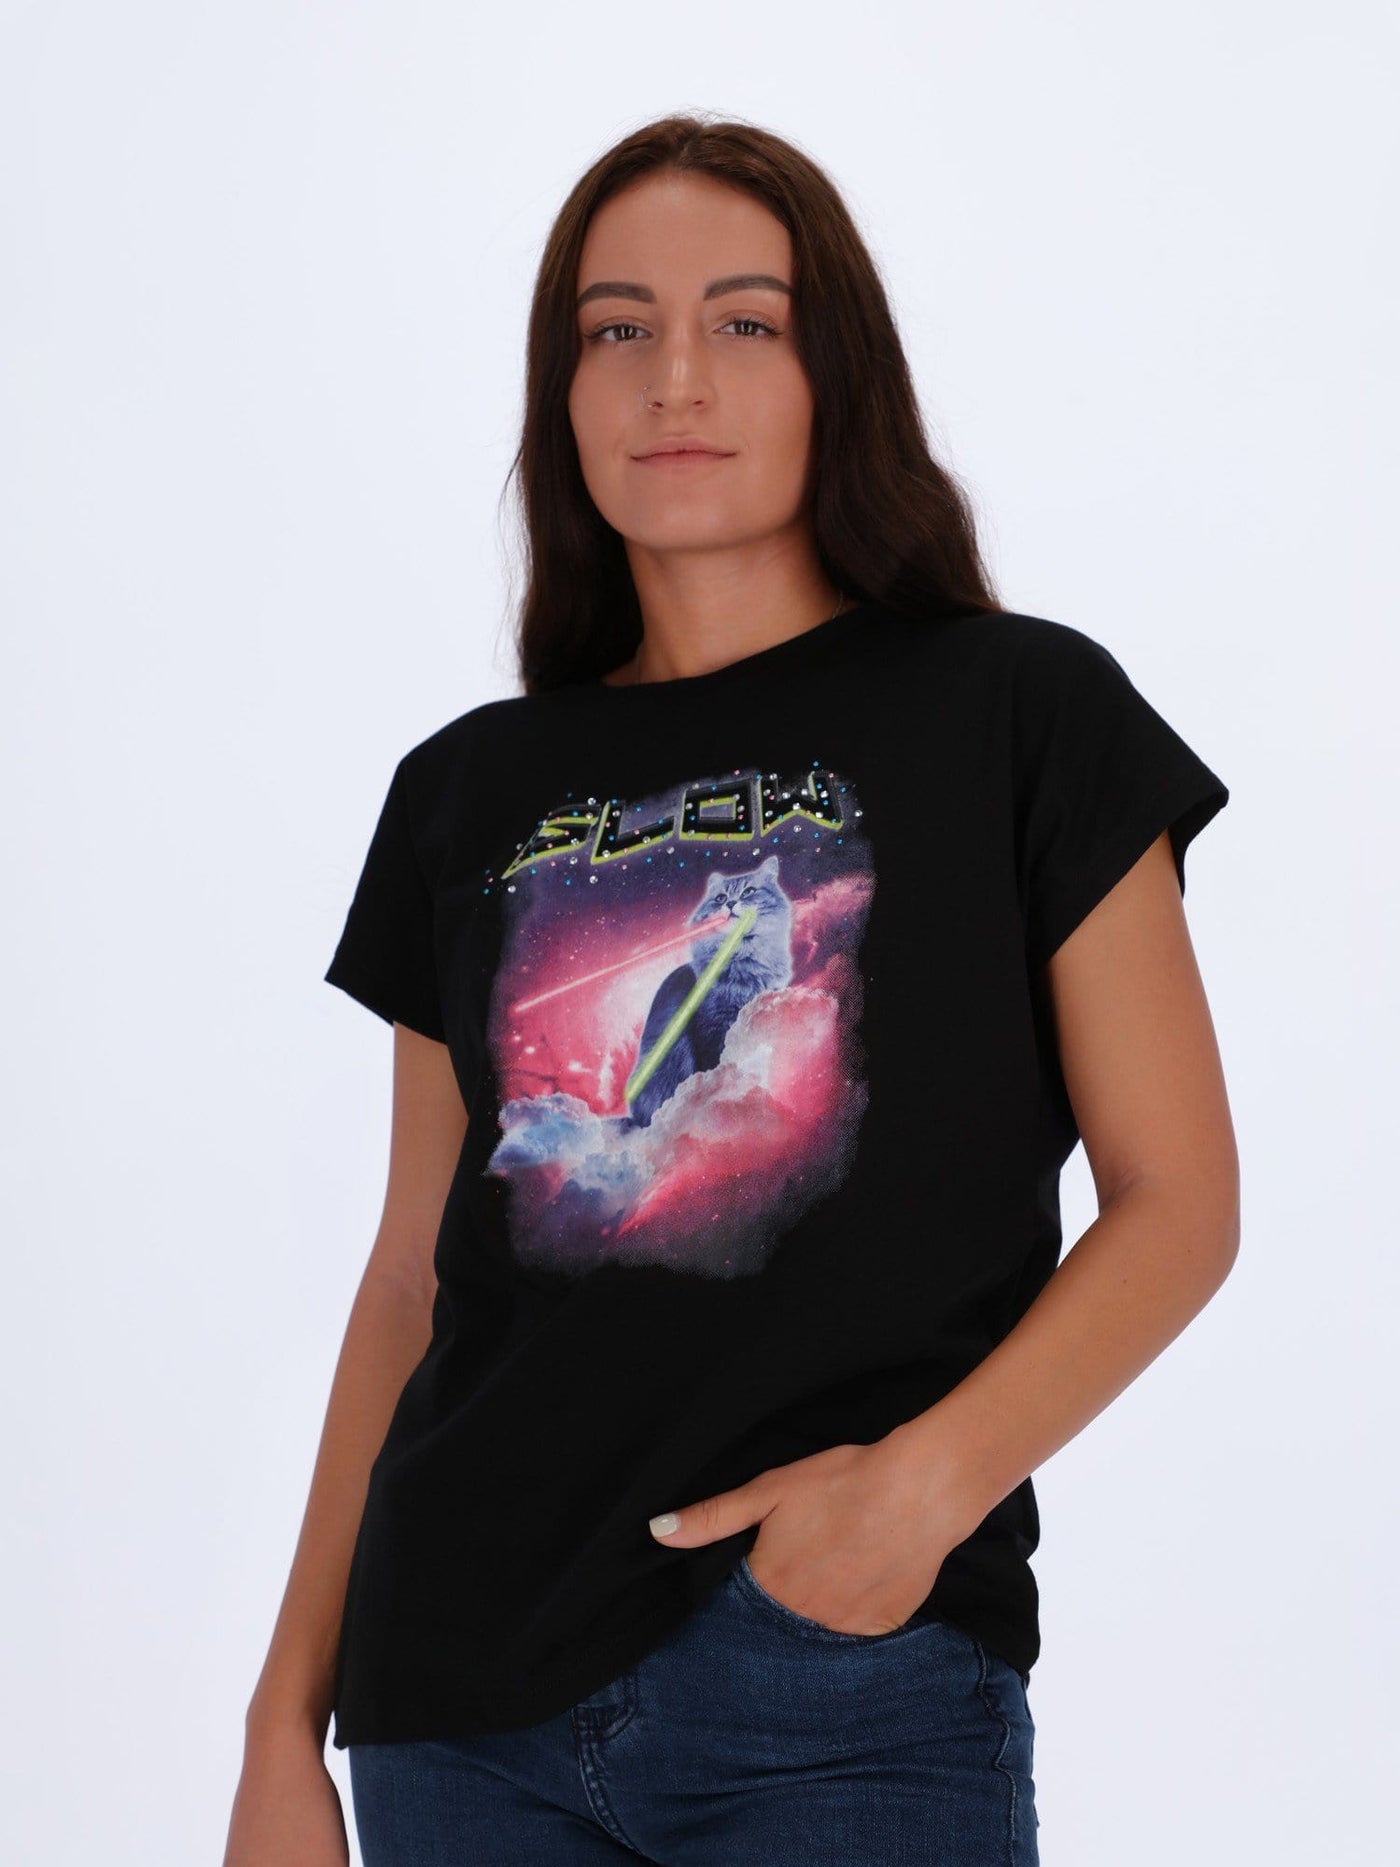 OR Tops & Blouses S / BLACK Printed T-shirt Glow Cat